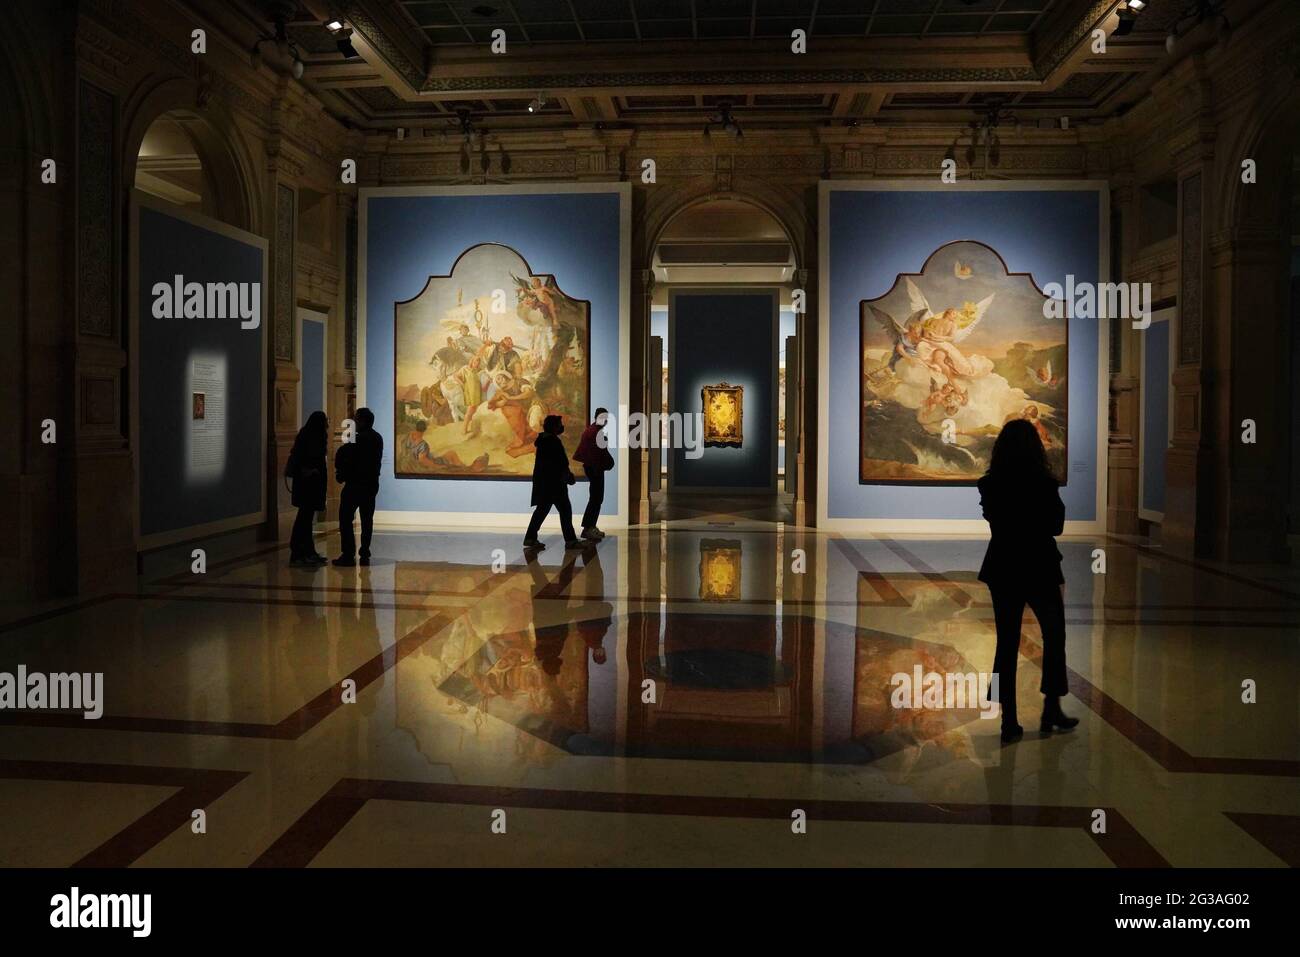 Mailand, Wiedereröffnung aufgrund von Covid-19-Beschränkungen der gelben Zone. Die italienischen Galerien, Piazza Scala, werden mit Besuchern der Tiepolo-Ausstellung wiedereröffnet Stockfoto